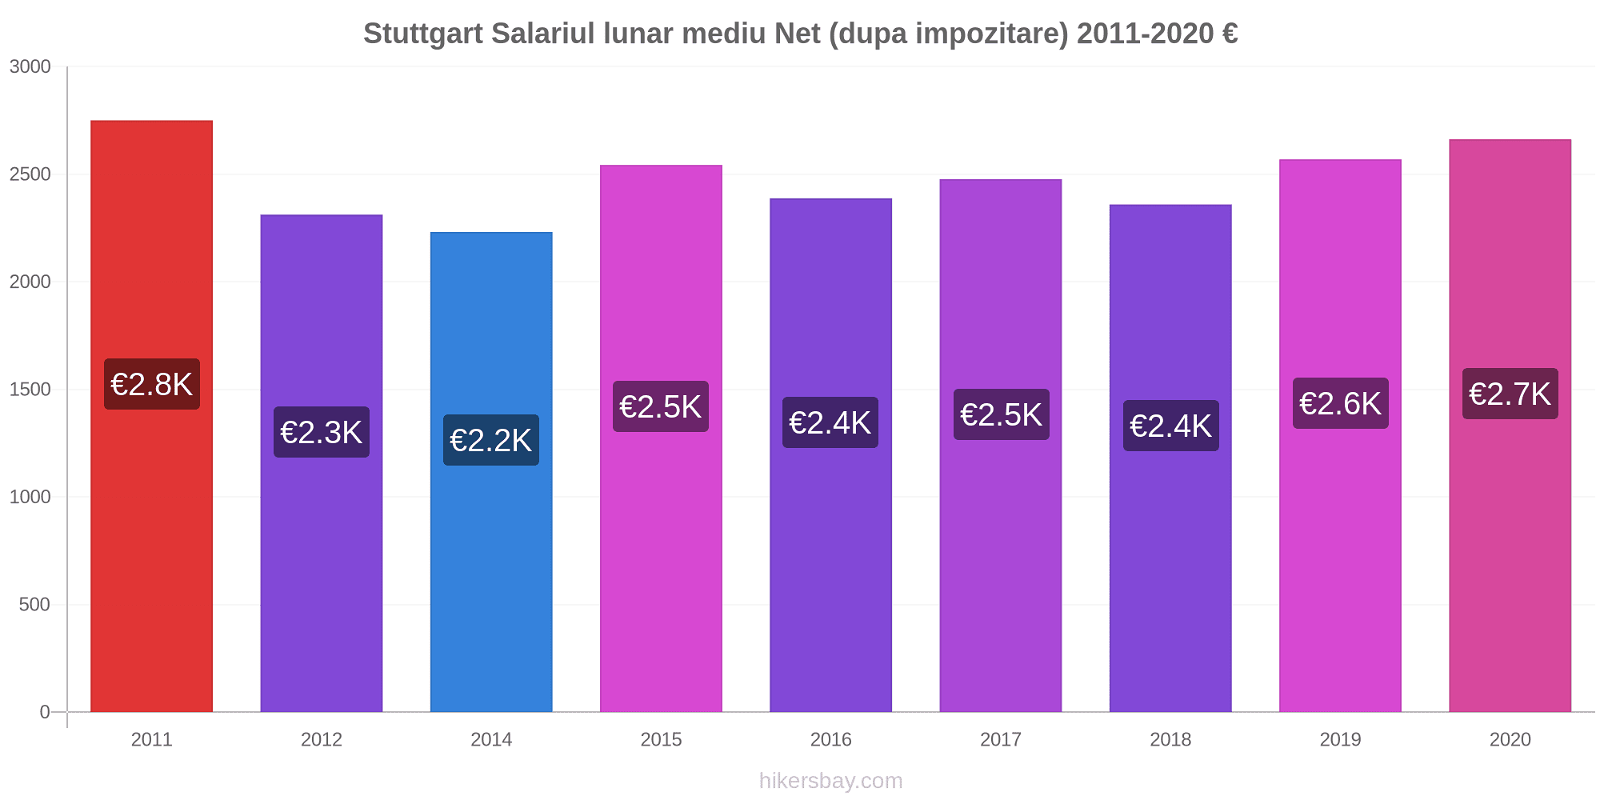 Stuttgart modificări de preț Salariul lunar mediu Net (dupa impozitare) hikersbay.com